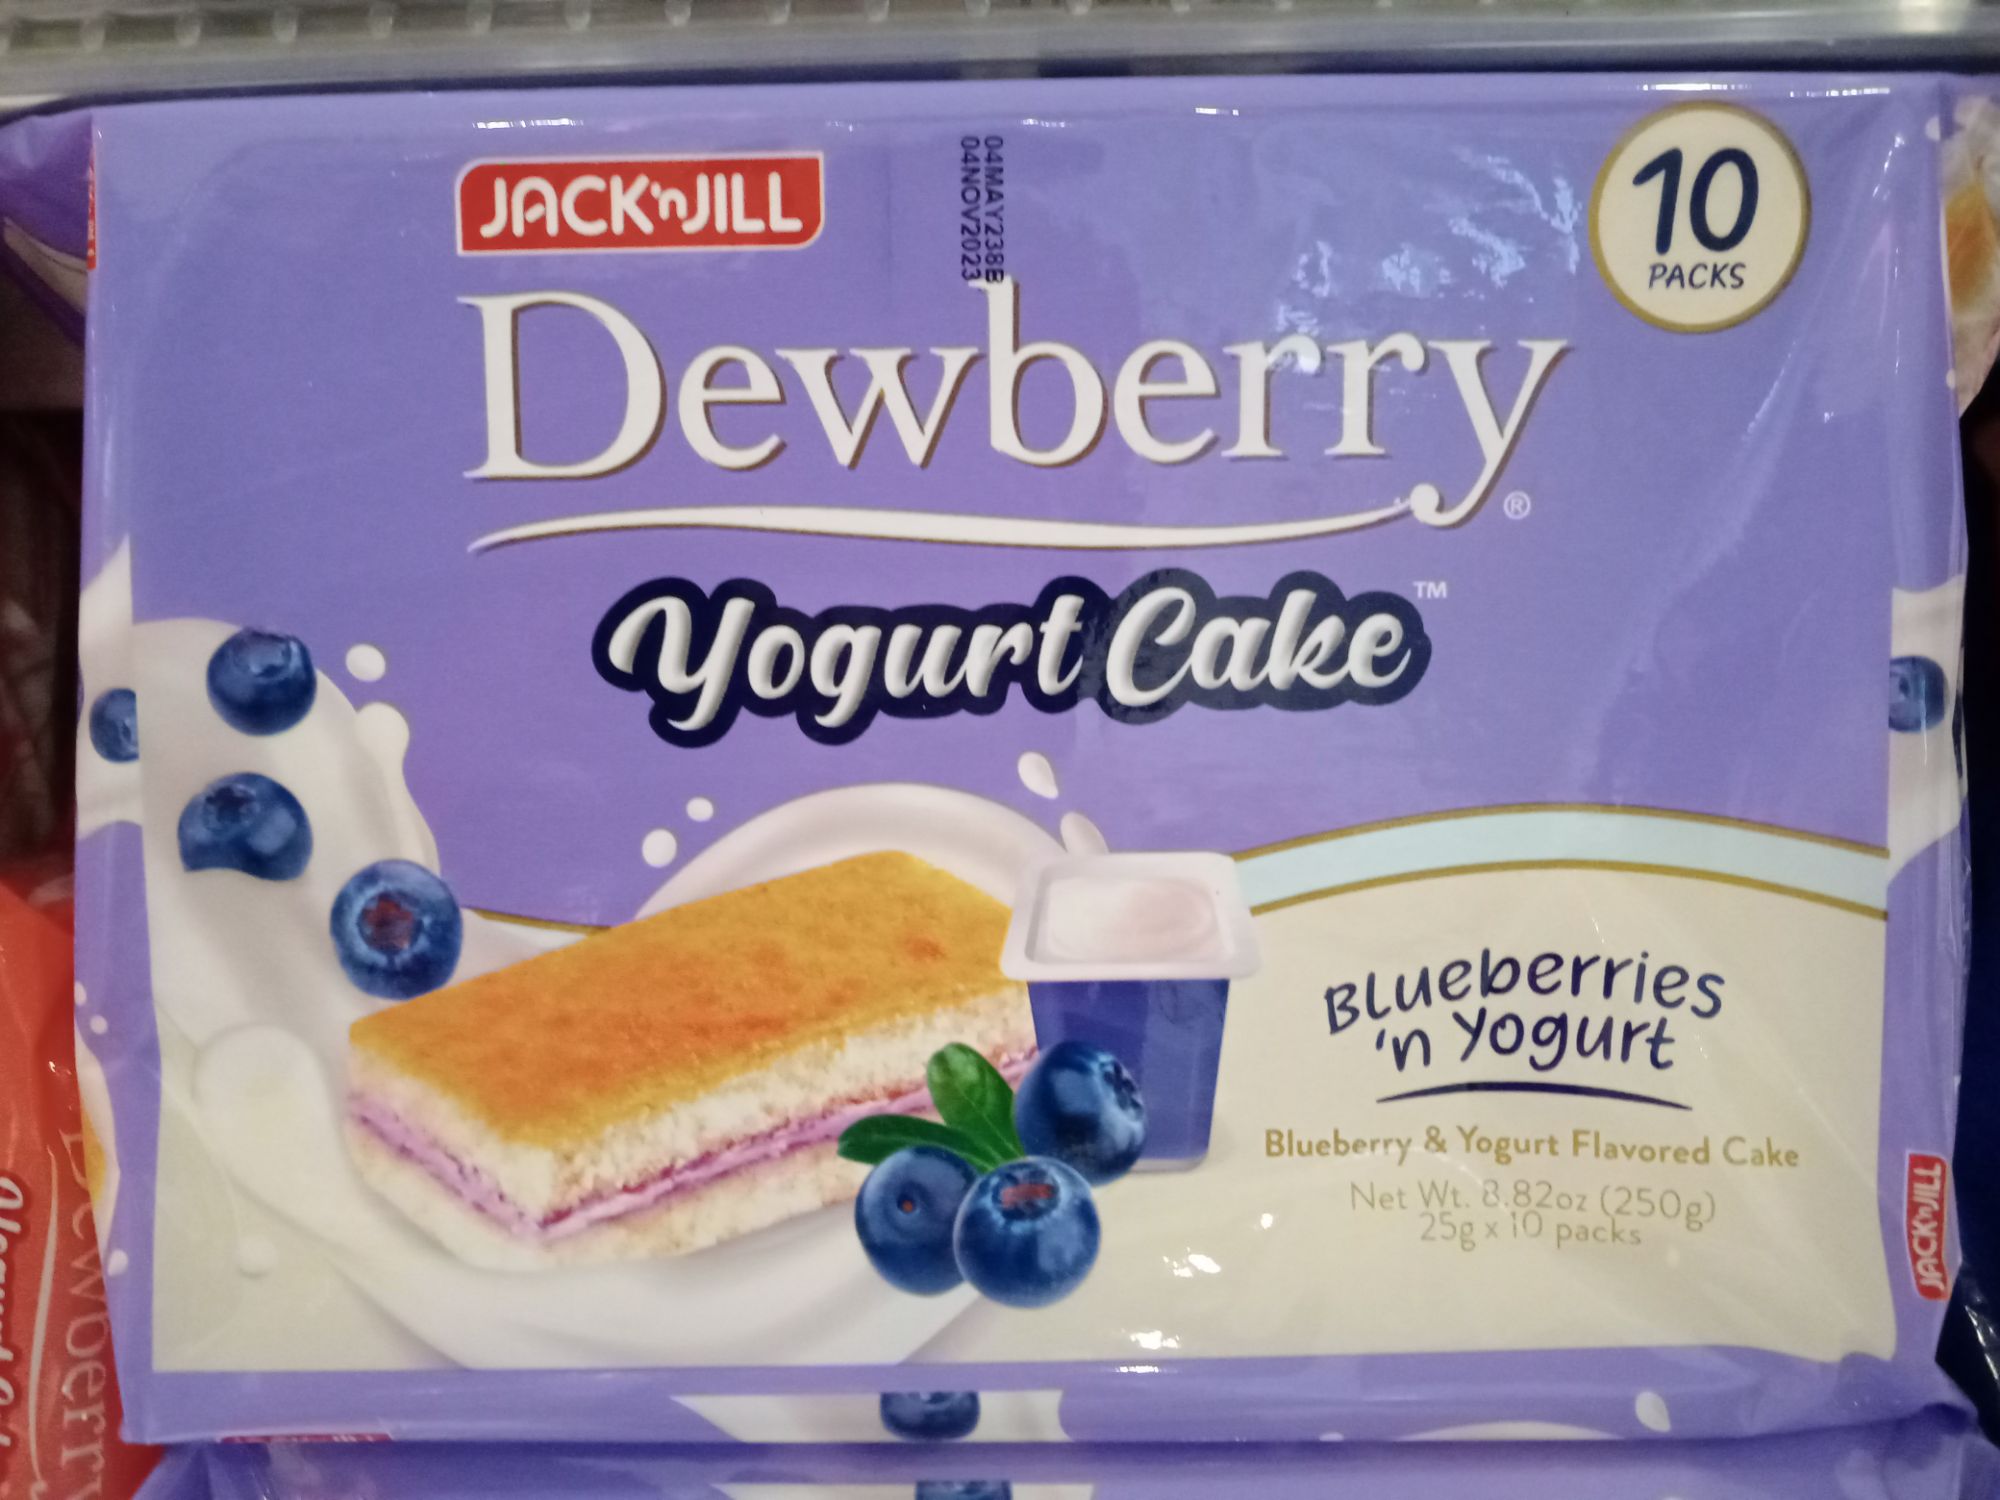 Dewberry Yogurt Cake Blueberries (25g.×10packs) | Lazada PH